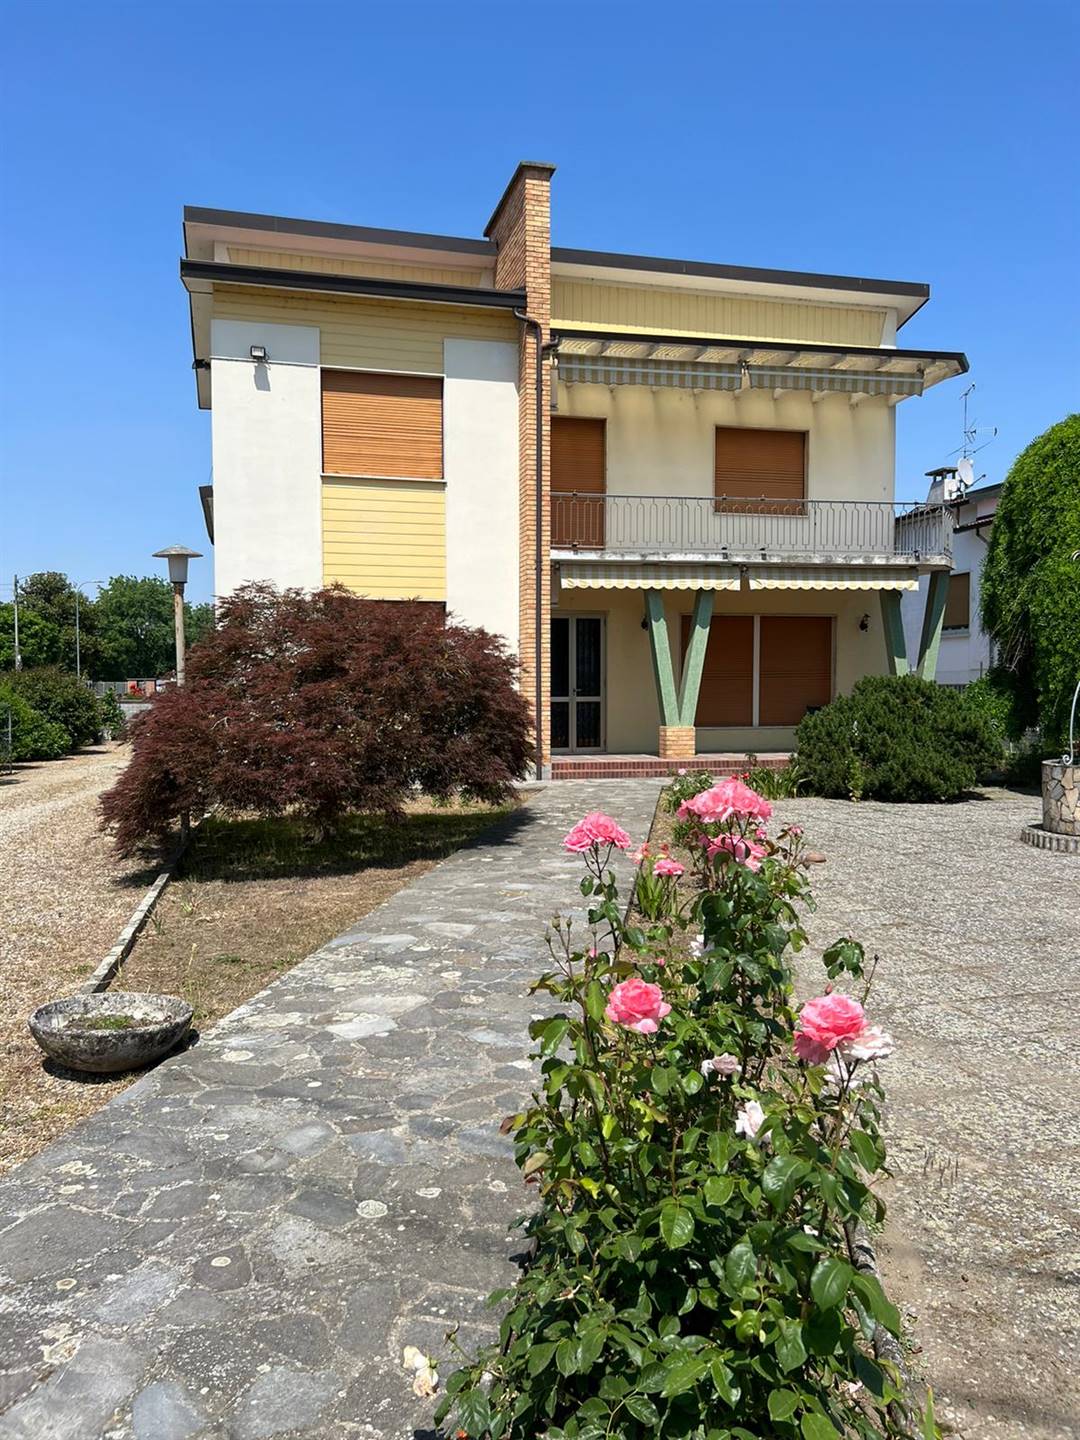 Villa in vendita a Valle Lomellina, 10 locali, prezzo € 190.000 | CambioCasa.it